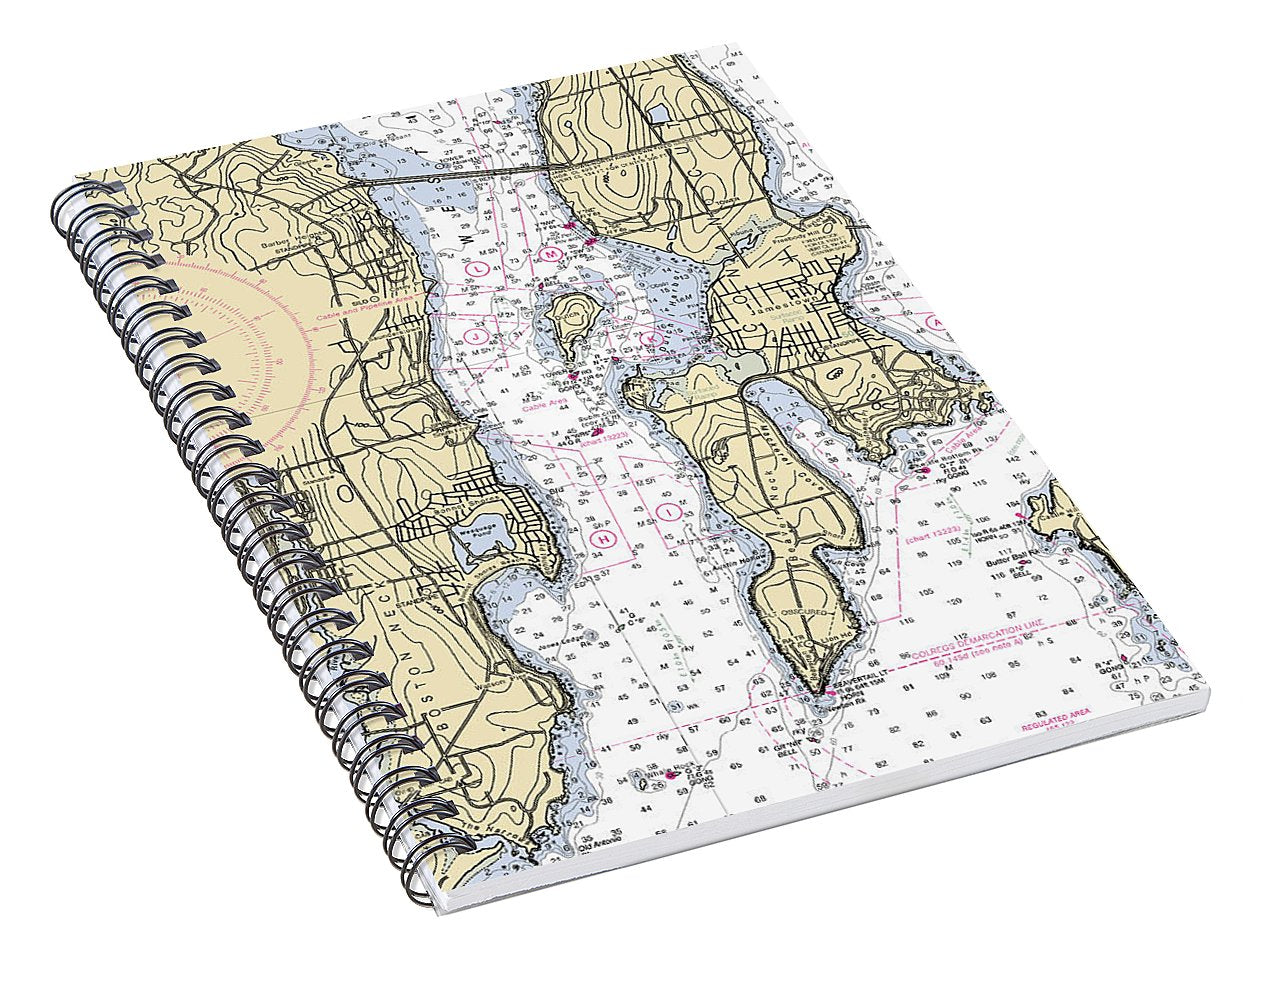 West Passage-rhode Island Nautical Chart - Spiral Notebook